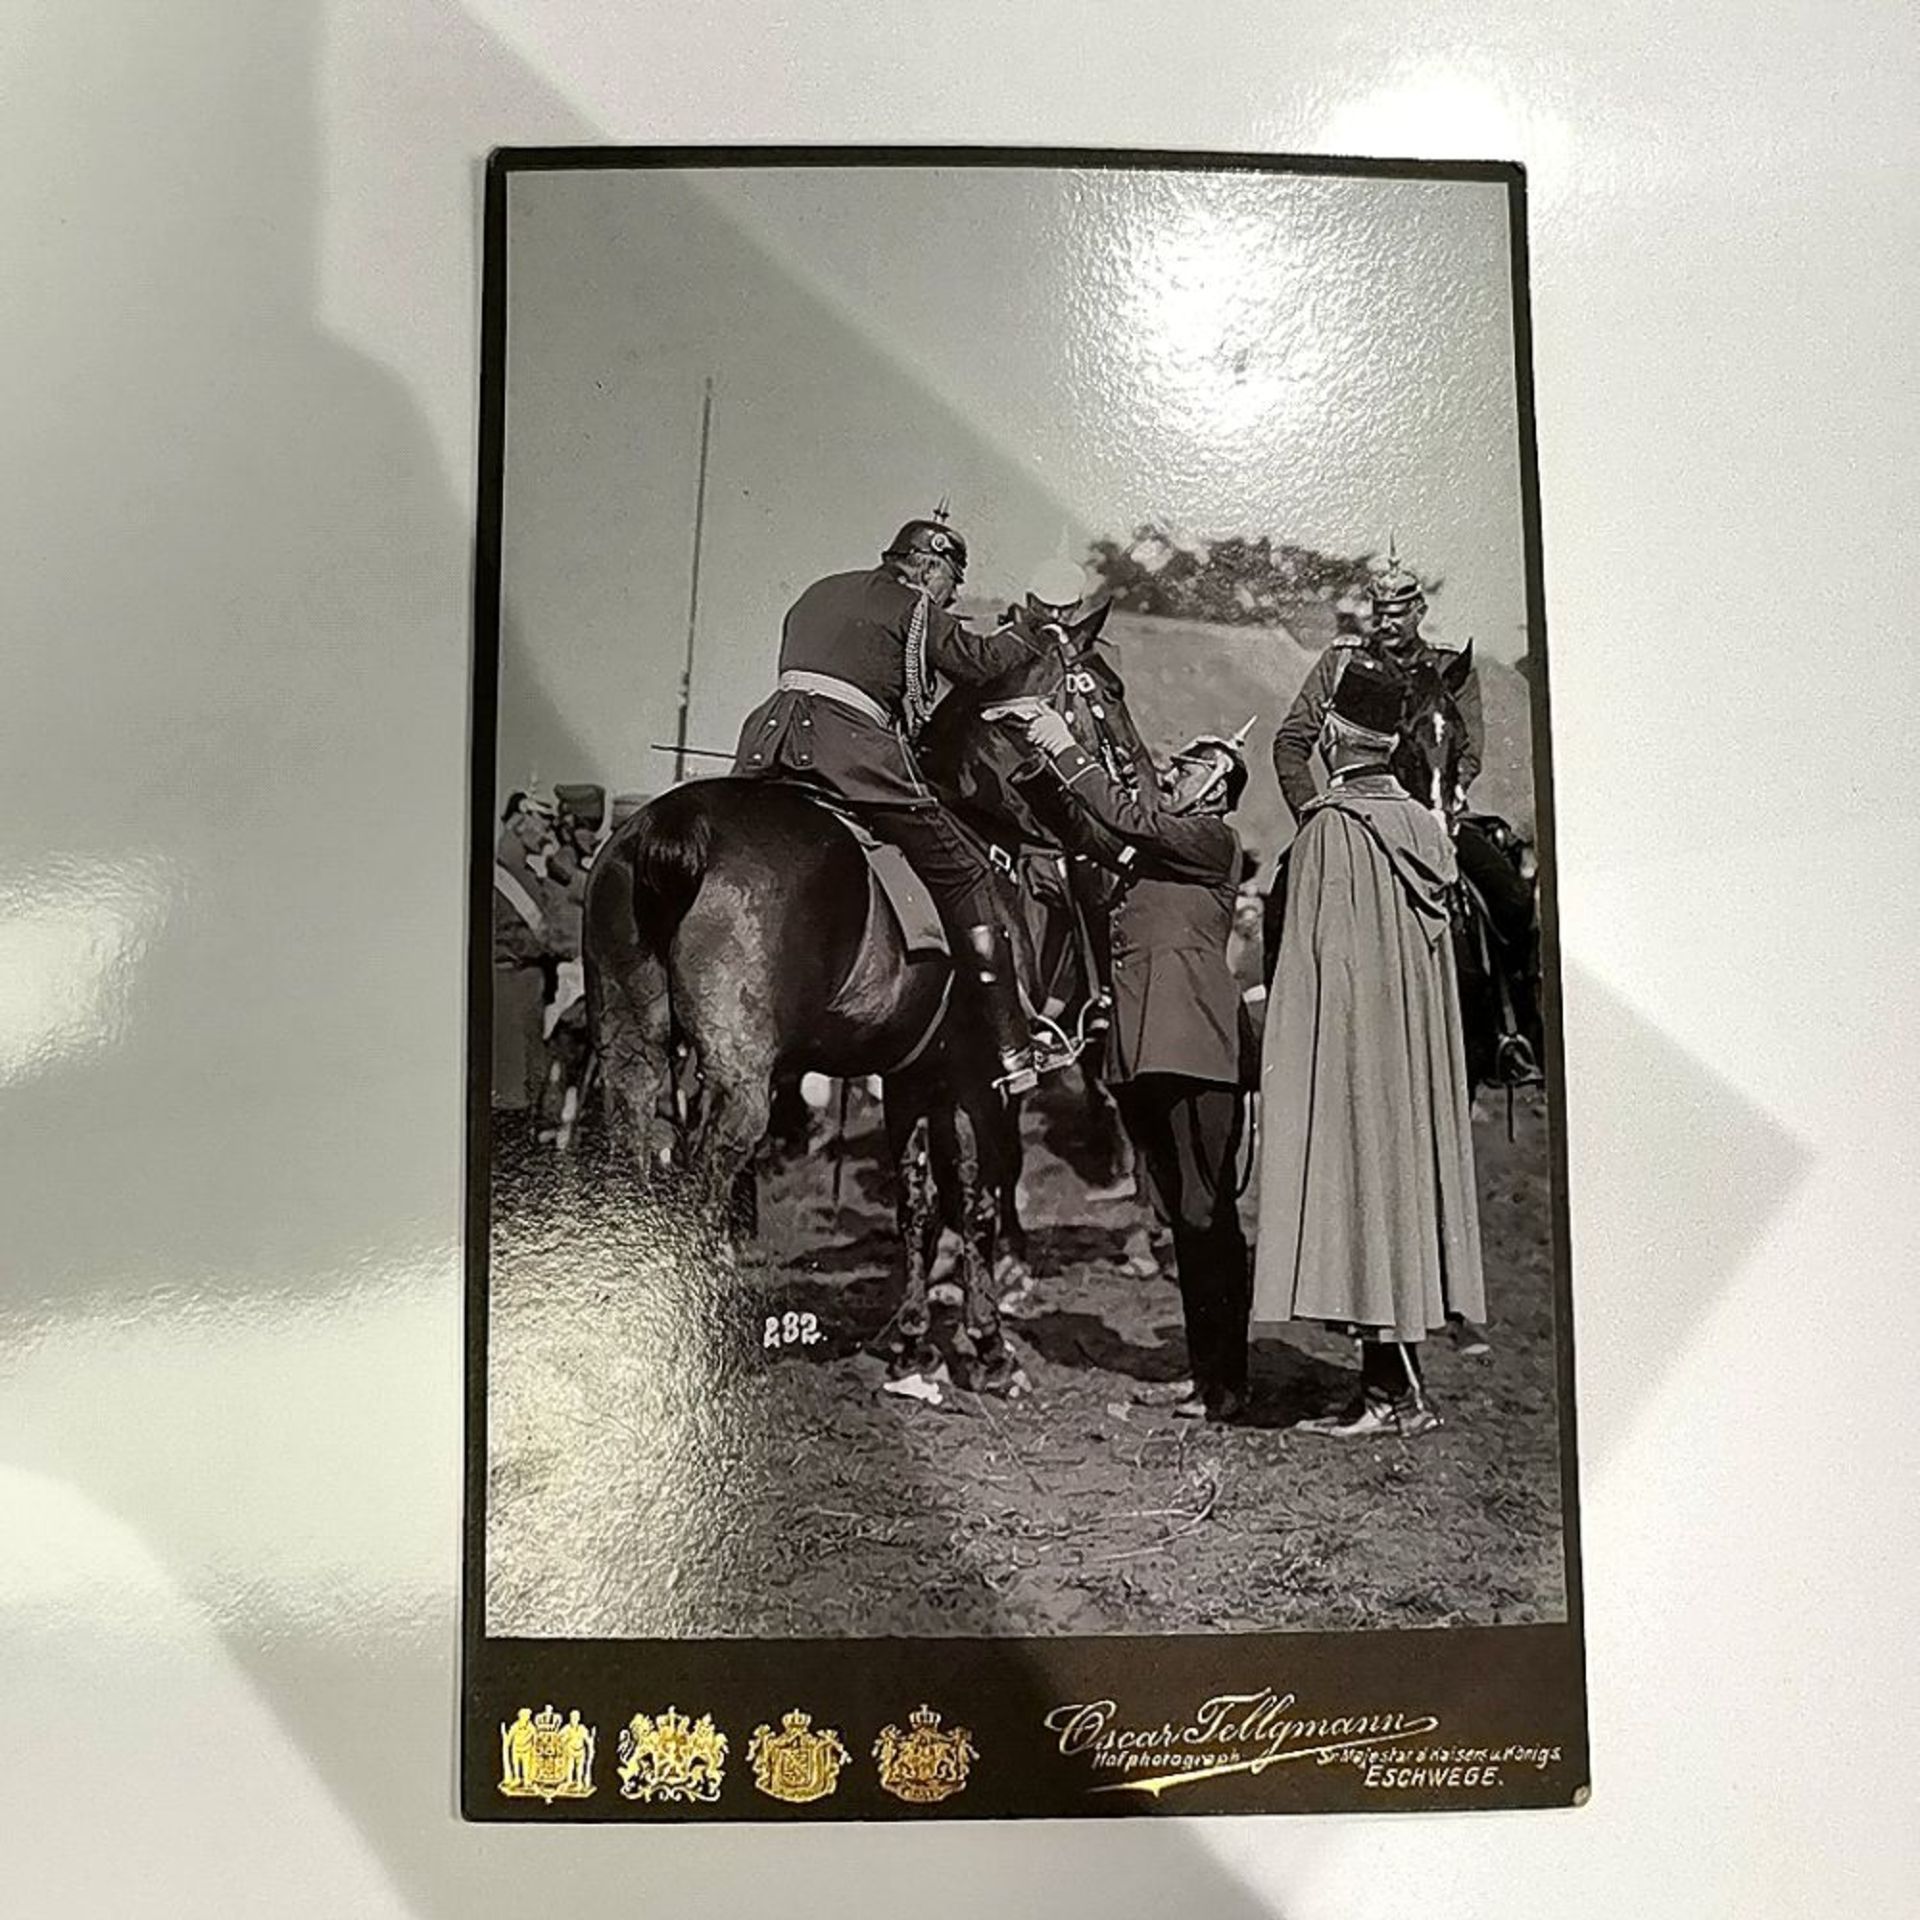 Seltene Fotografie mit Kaiser Wilhelm